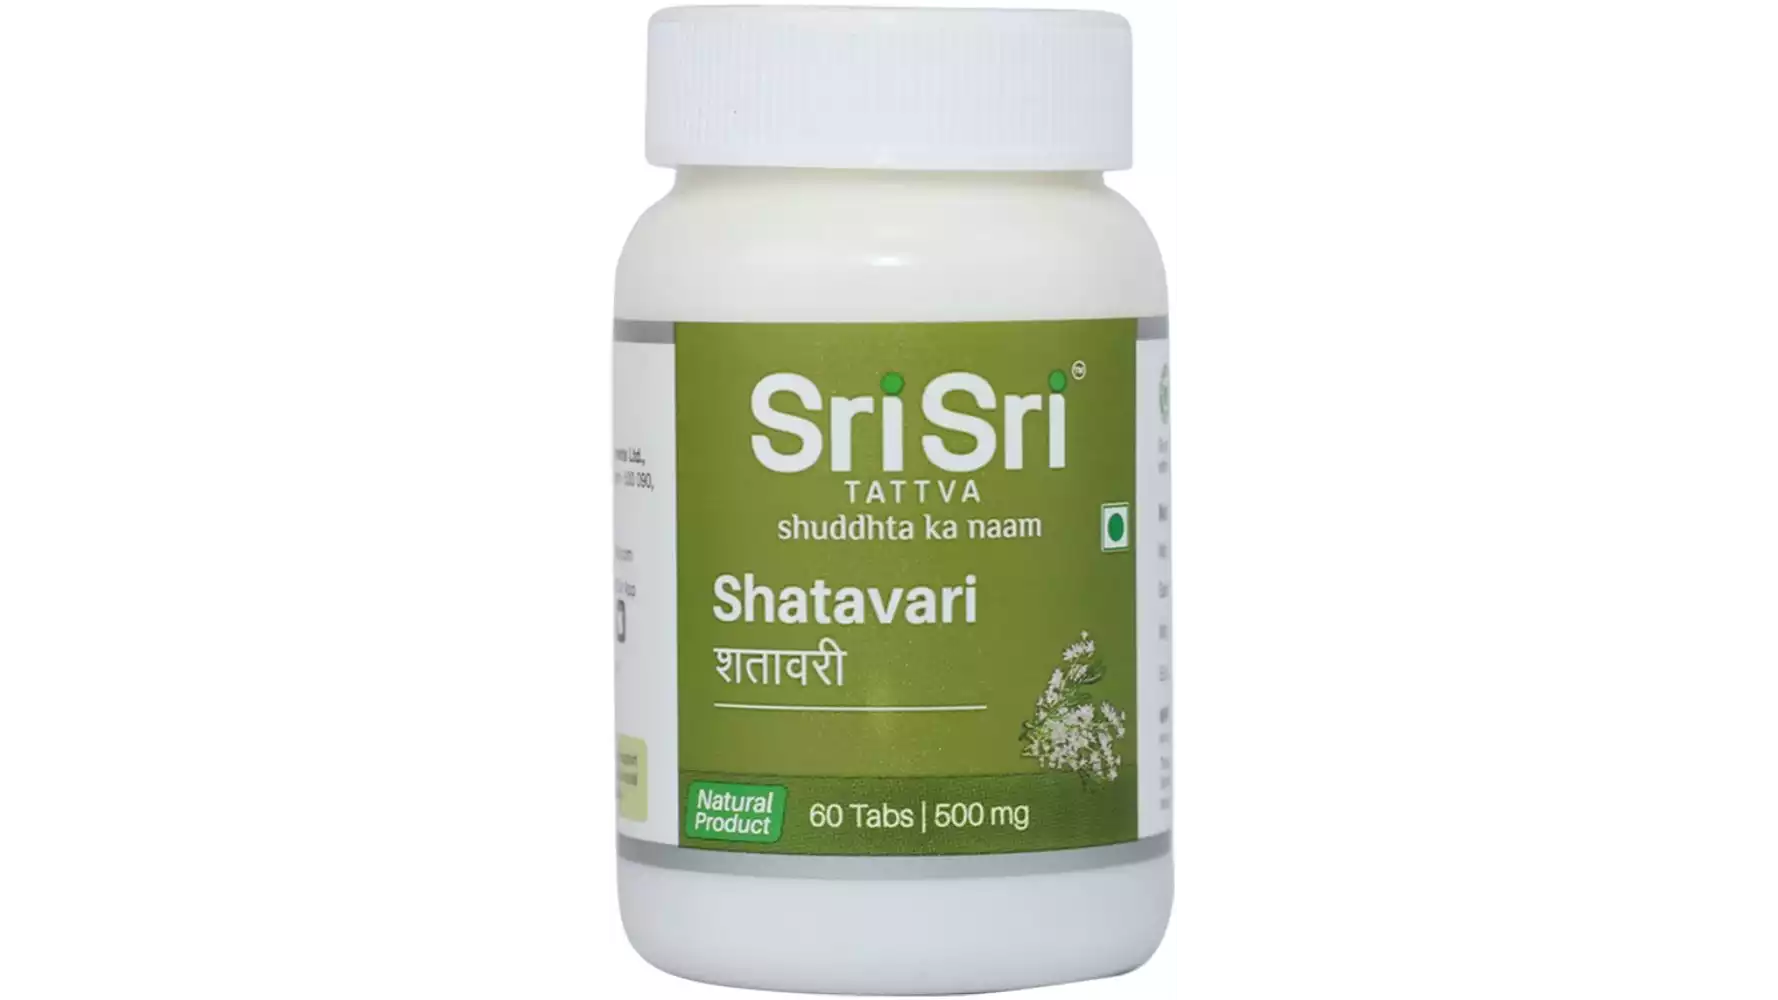 Sri Sri Tattva Shatavari Tablet (60tab)